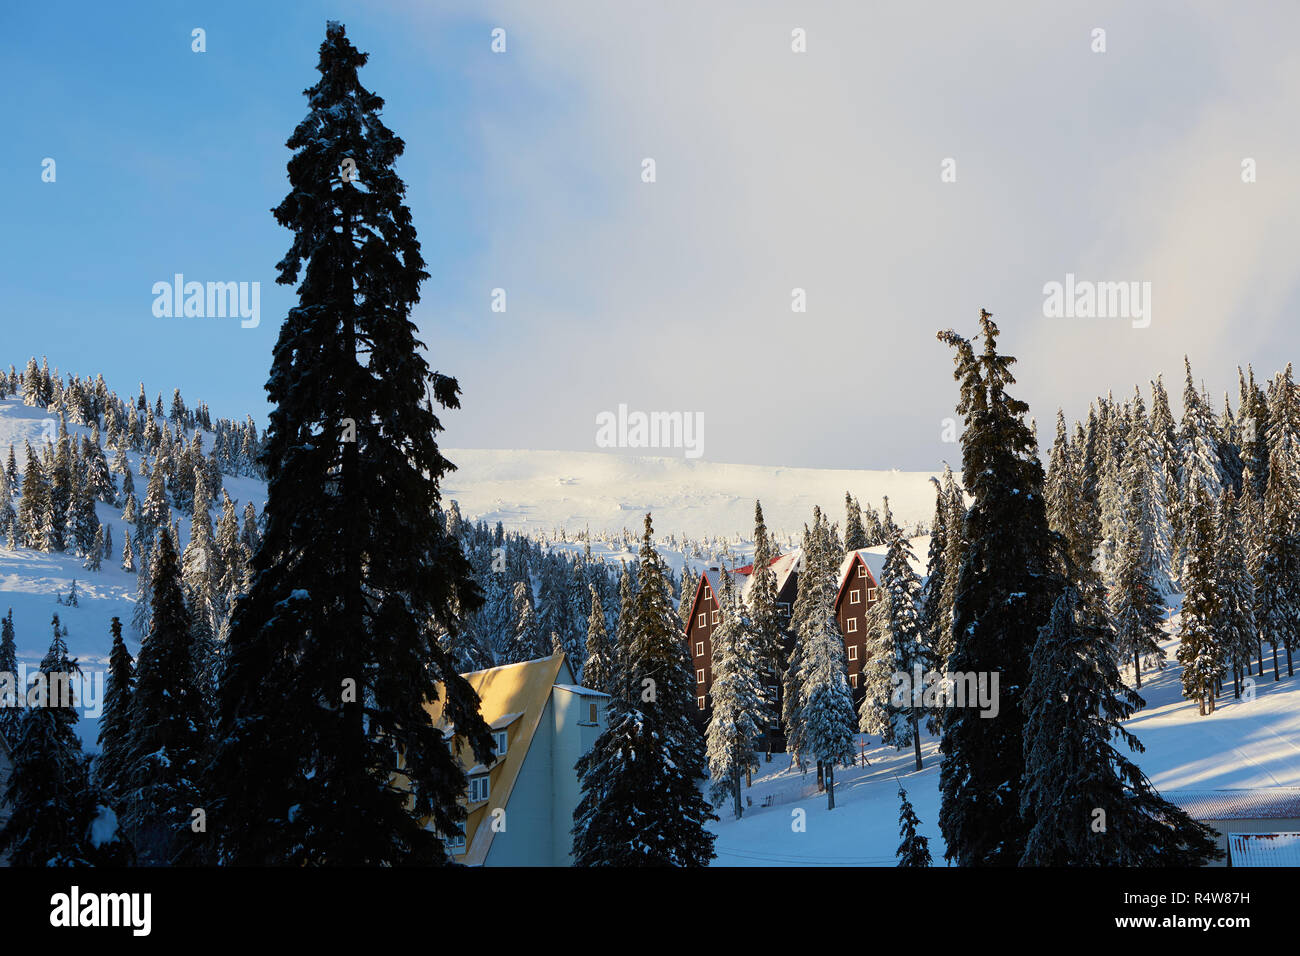 Mountain Ski Resort Winter Landschaft Foto. Hohe Tannen und Chalet Häuser mit Schnee bedeckt. Ferienhäuser und Ferienwohnungen bei Sonnenaufgang im Tal in der Nähe von Ski Lift. Hotel Gebäude in den Morgen. Stockfoto